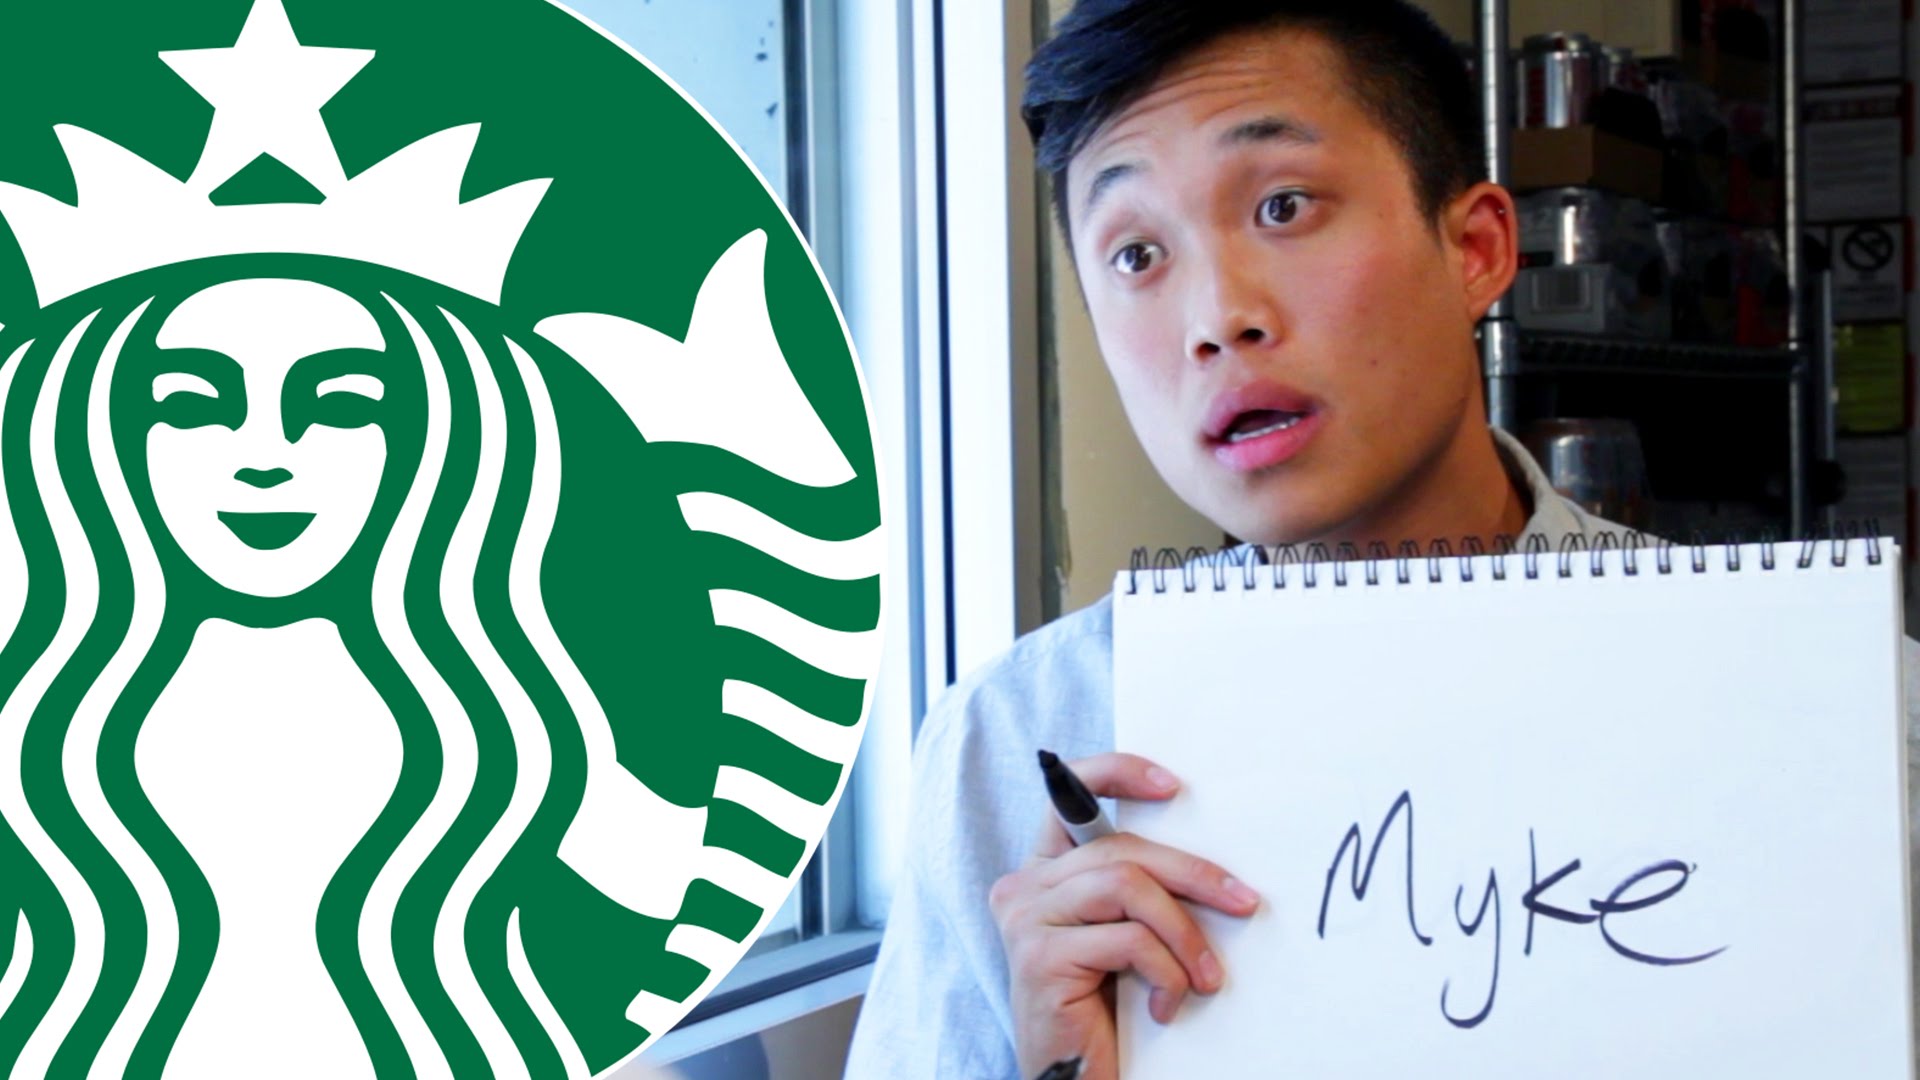 VIDEO: Starbucks darba intervija – vārdu rakstīšana uz krūzītes! Tie, kas tur kaut reizi ir pirkuši kafiju, zinās, par ko ir stāsts! (The Starbucks Interview Spelling Test)